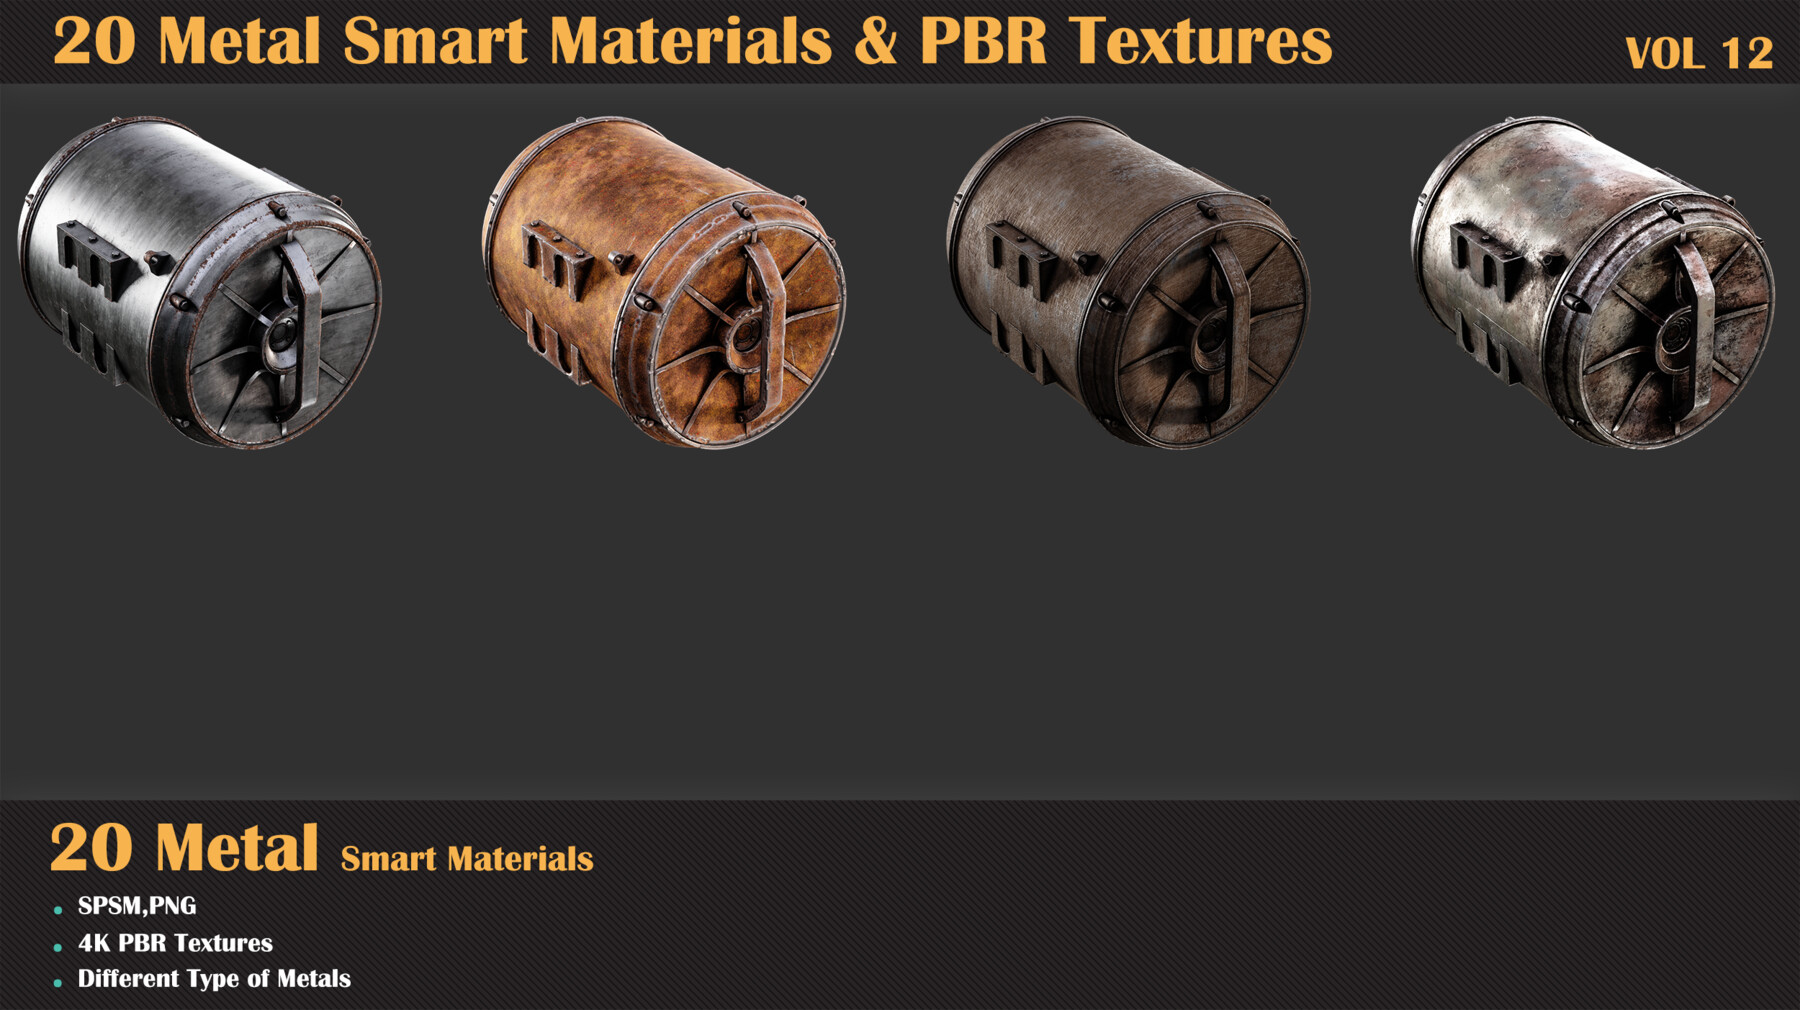 Milad Kambari - 20 Leather Smart Materials + PBR Textures - VOL 04